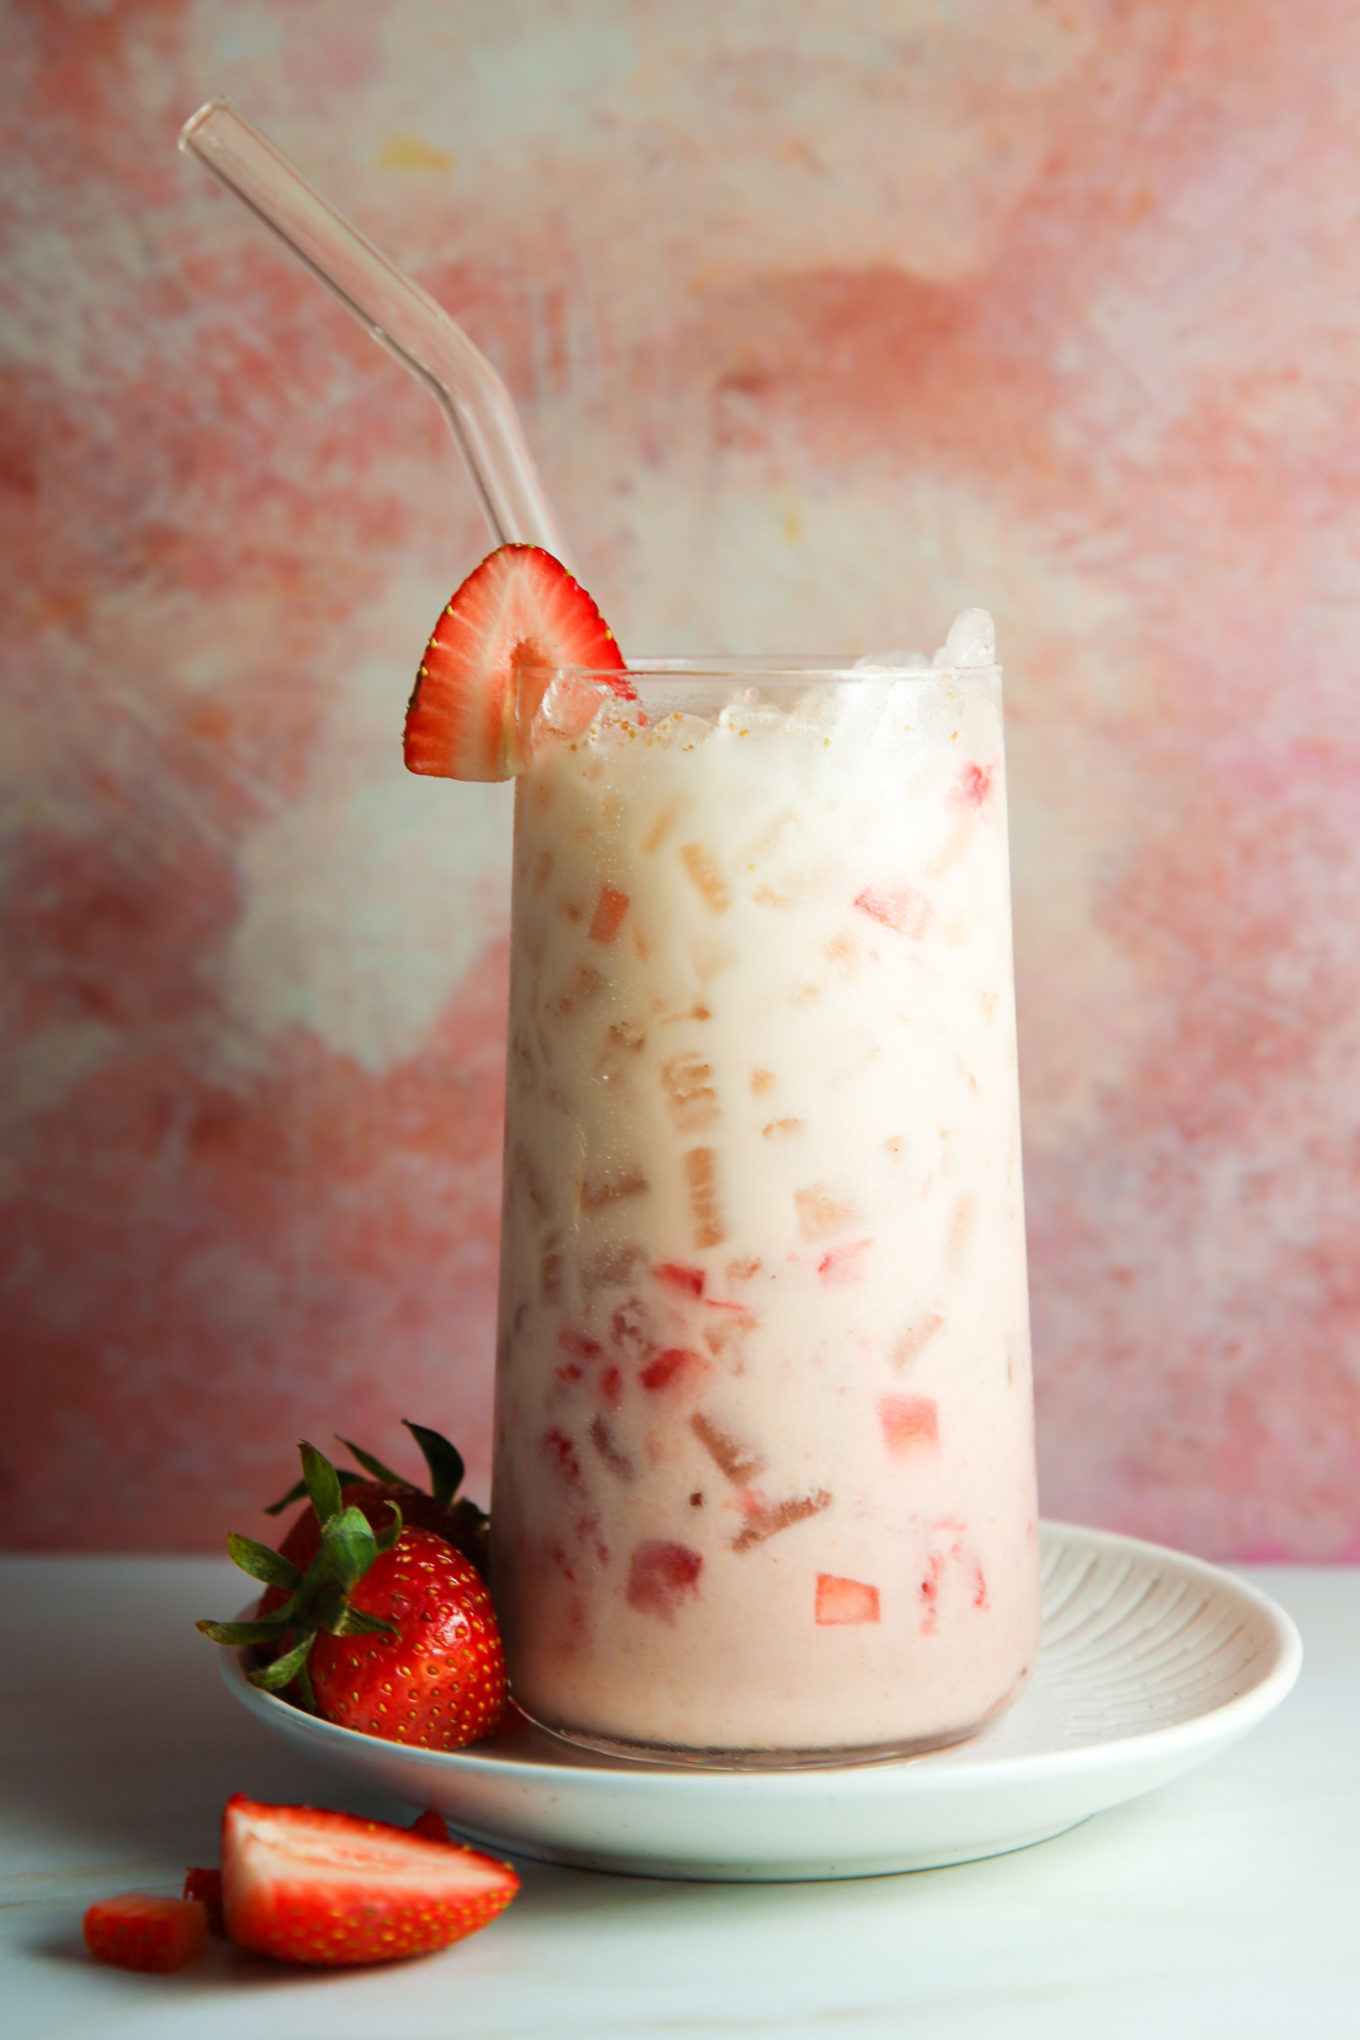 Una refrescante horchata de fresa en un vaso transparente, lleno de hielo y fresas troceadas, coronado con una fresa entera en el borde. La bebida se sirve con una pajita de cristal, en un plato ligero